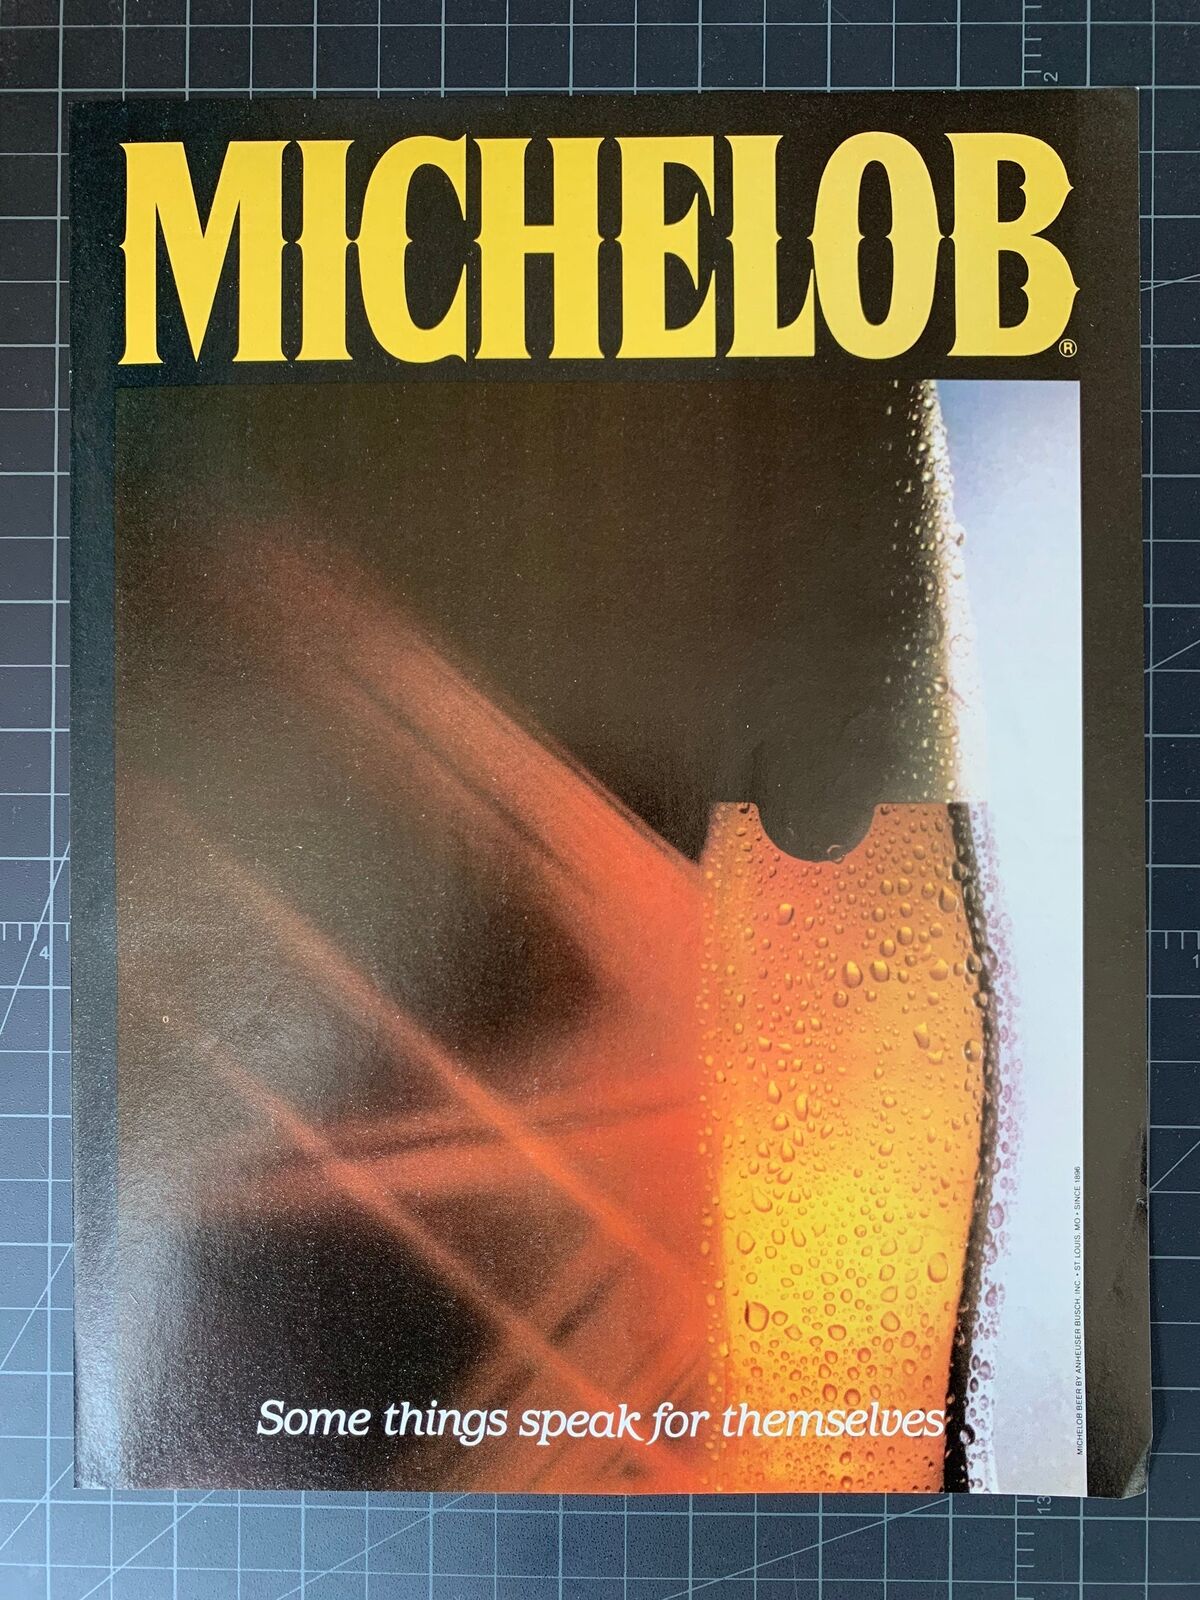 Vintage 1980s Michelob Beer Print Ad